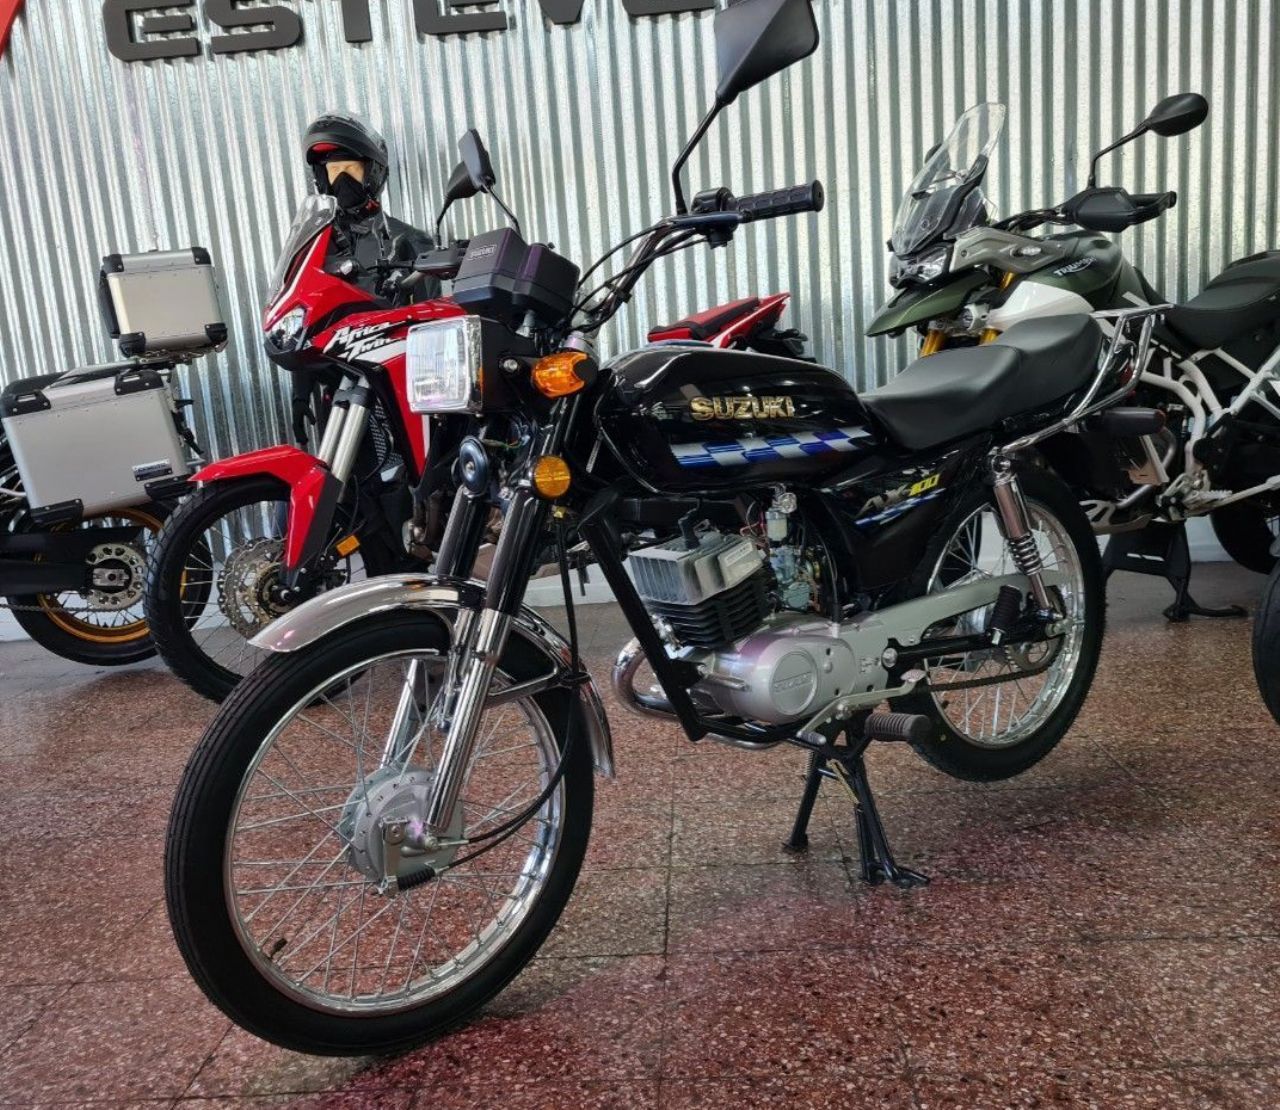 Suzuki AX Usada en Mendoza, deRuedas